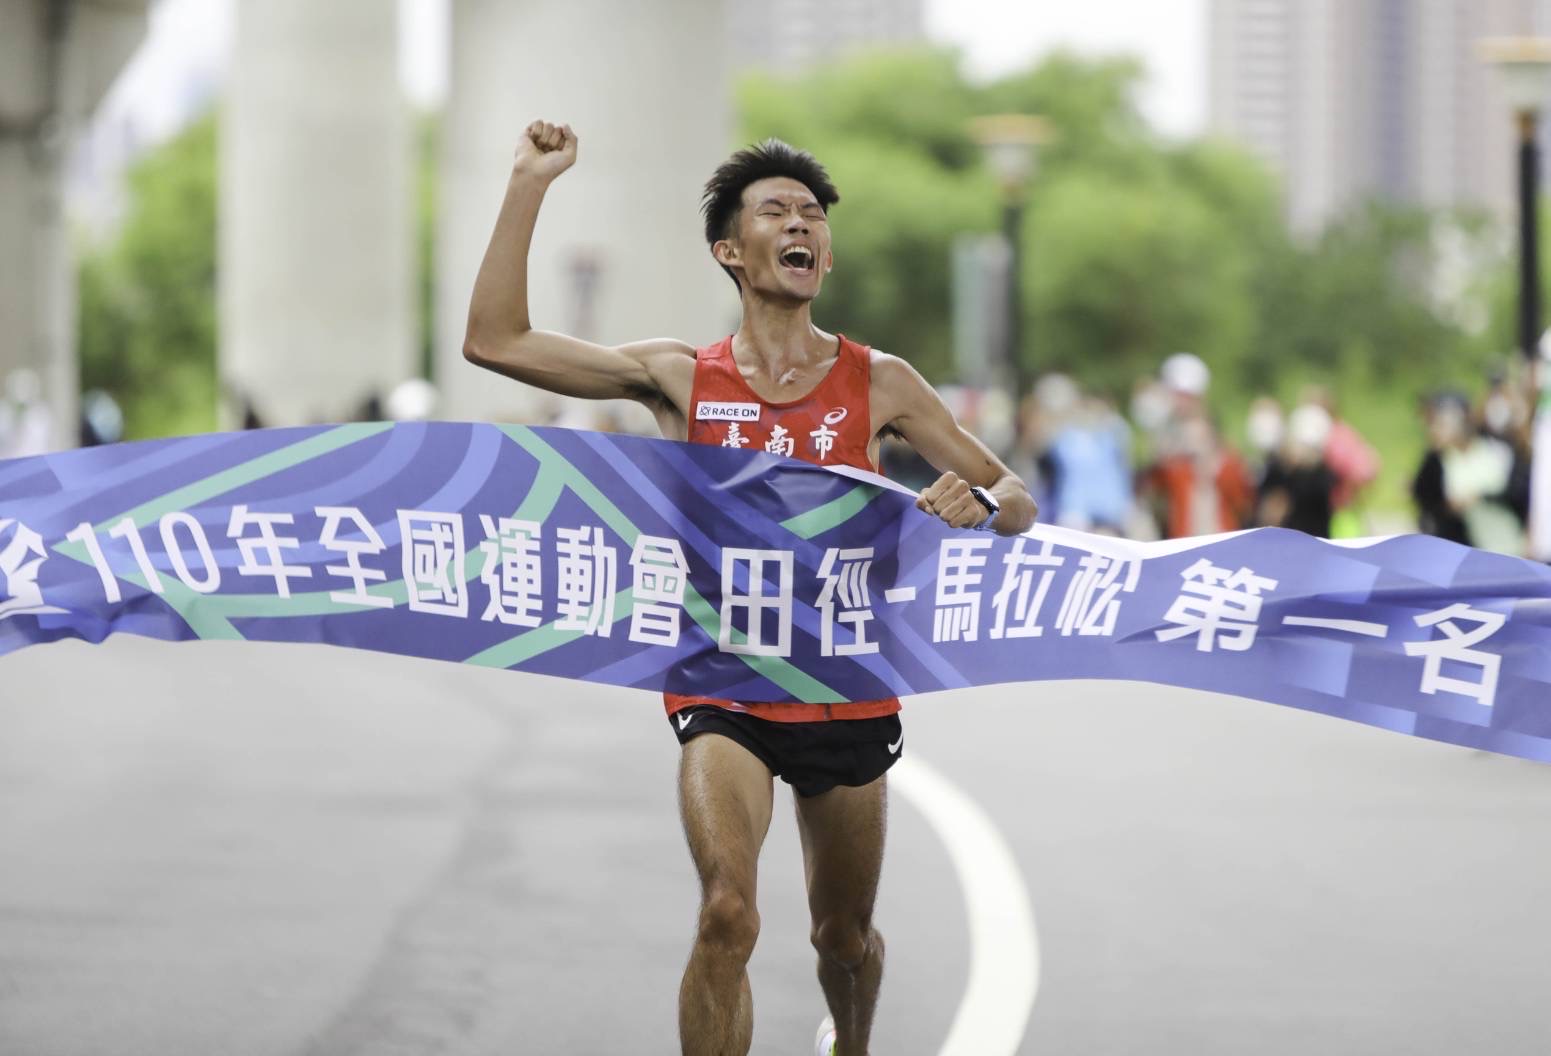 臺南馬拉松選手挑戰韓國汝矣島櫻花馬拉松  體育局陳良乾局長為選手加油